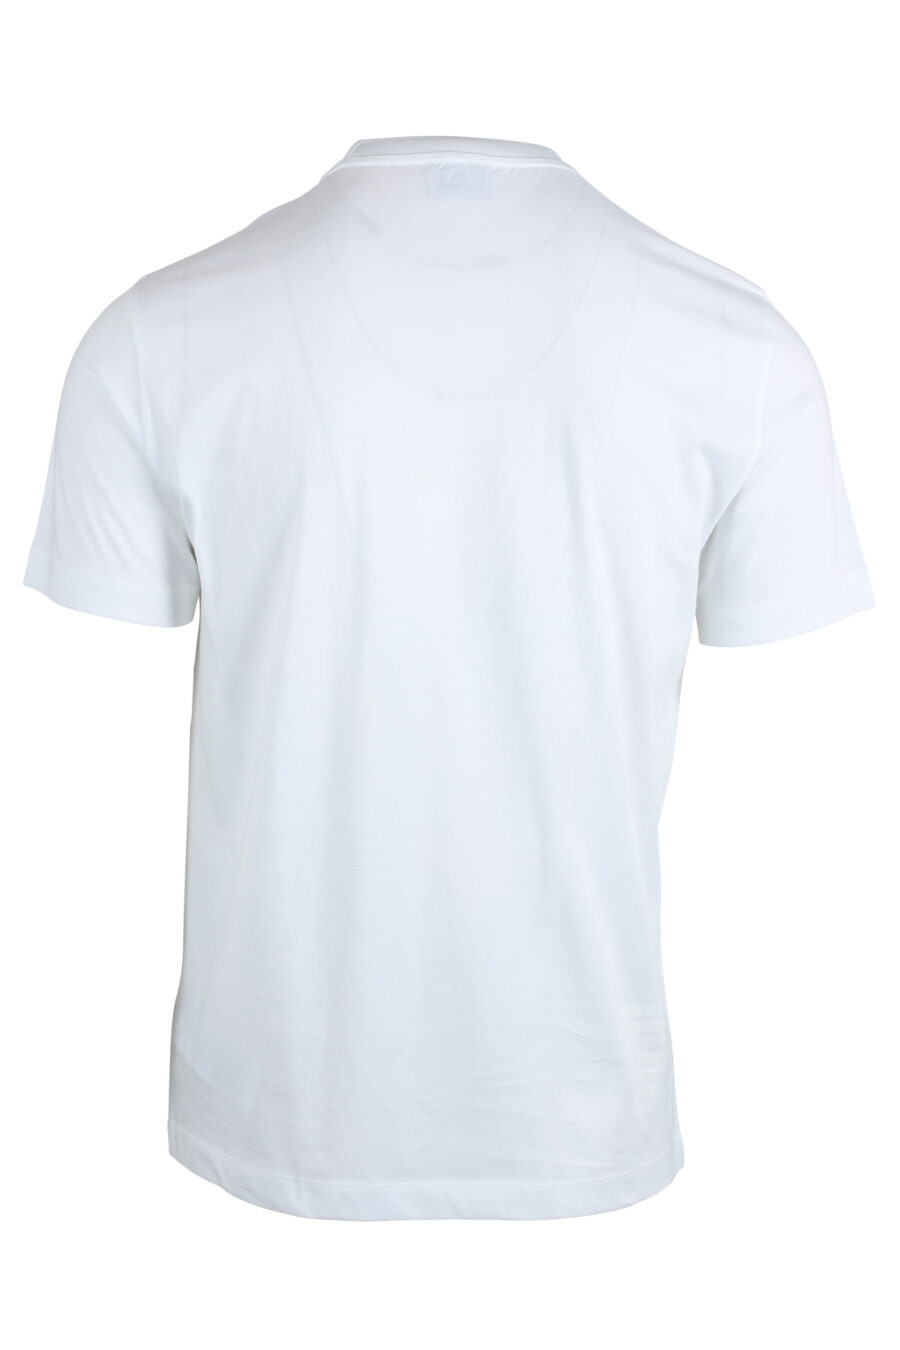 Camiseta blanca con minilogo en parche en metal - IMG 4801